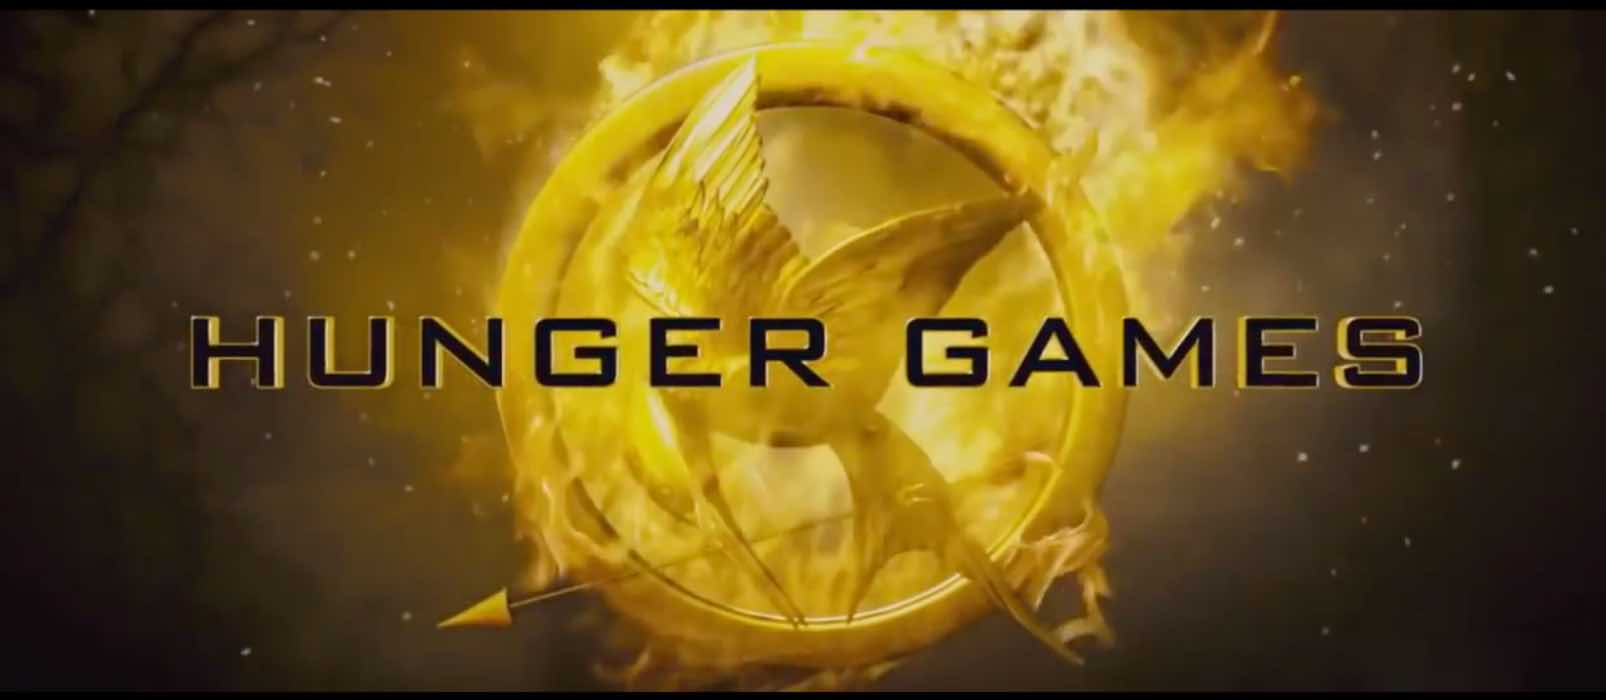 'Hunger Games': trama, cast e curiosità sul film con Jennifer Lawrence